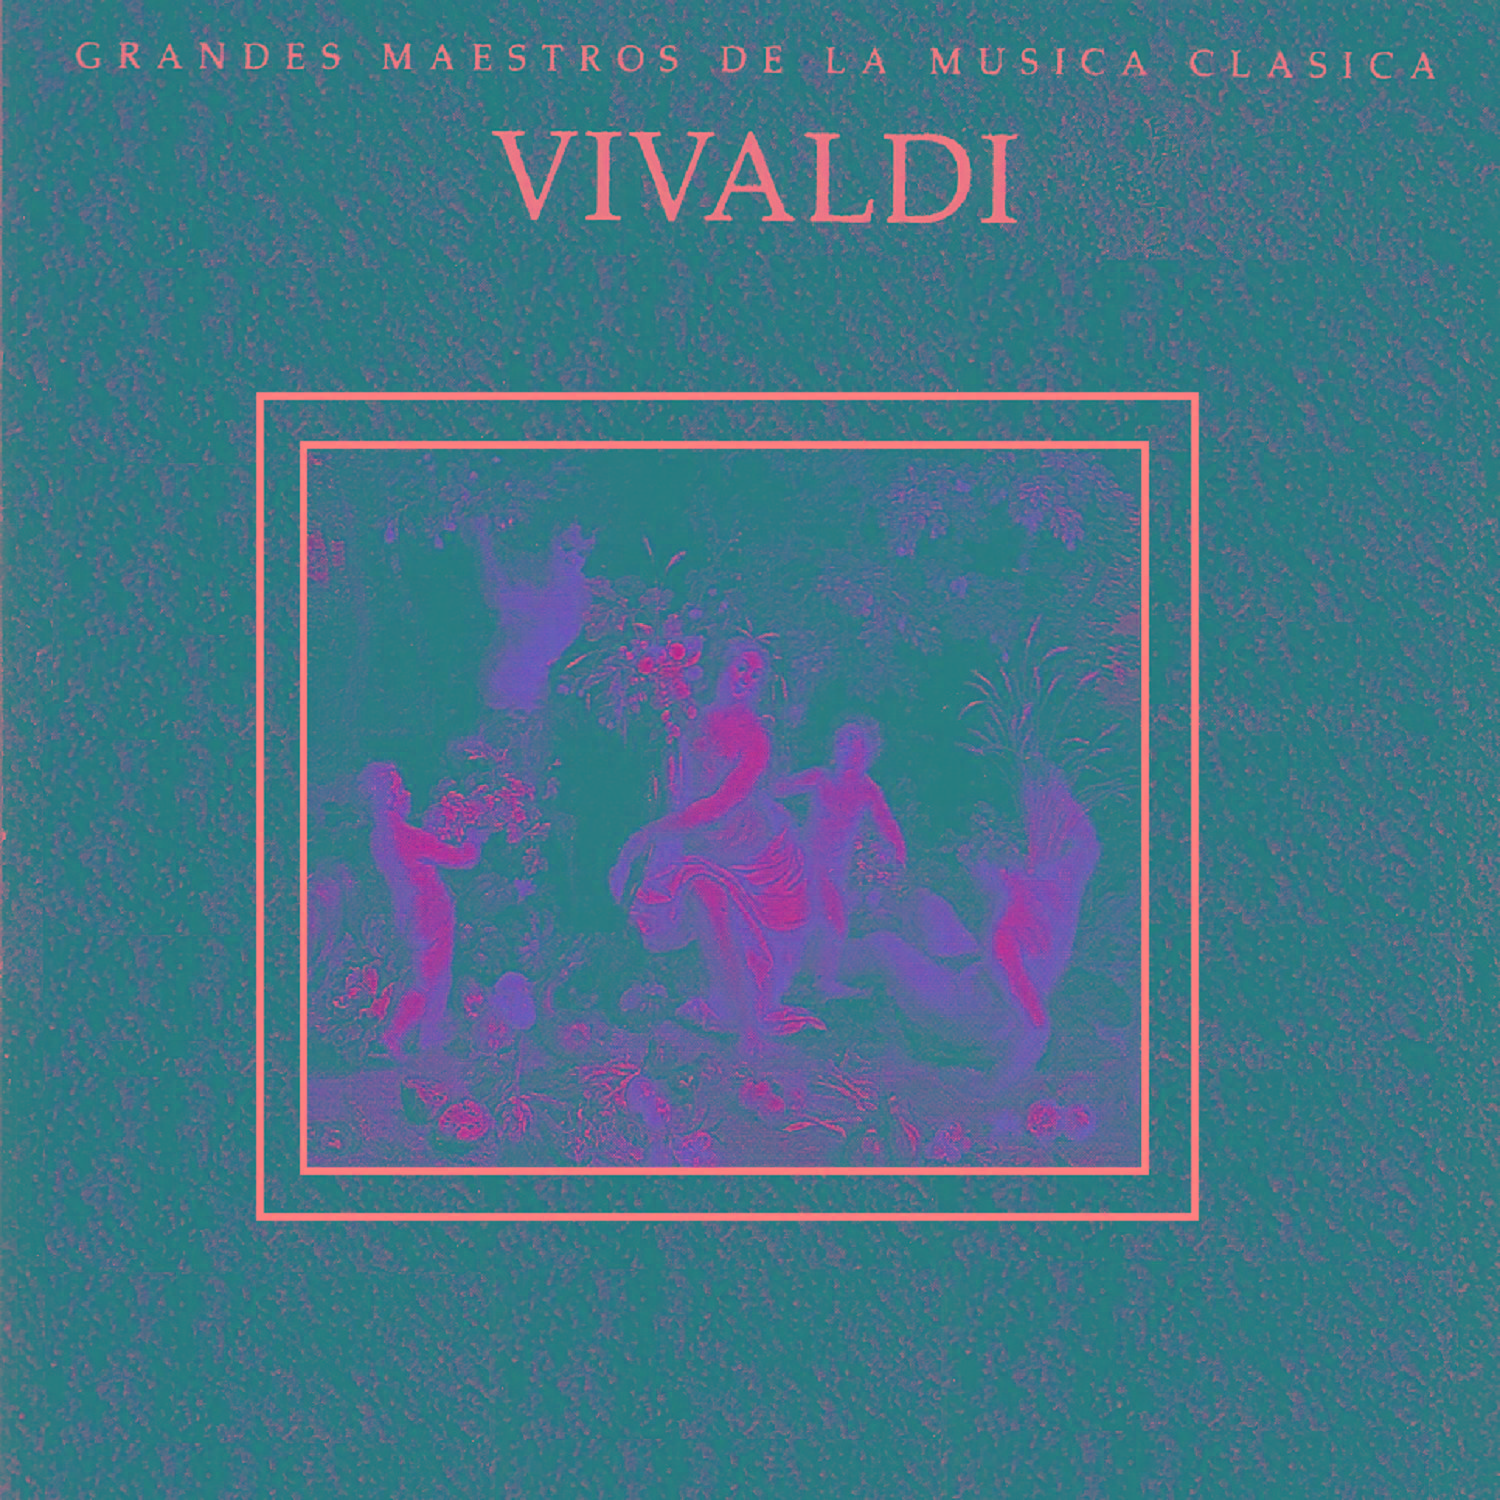 Violin Concerto in F Major, RV 293: I. Allegro